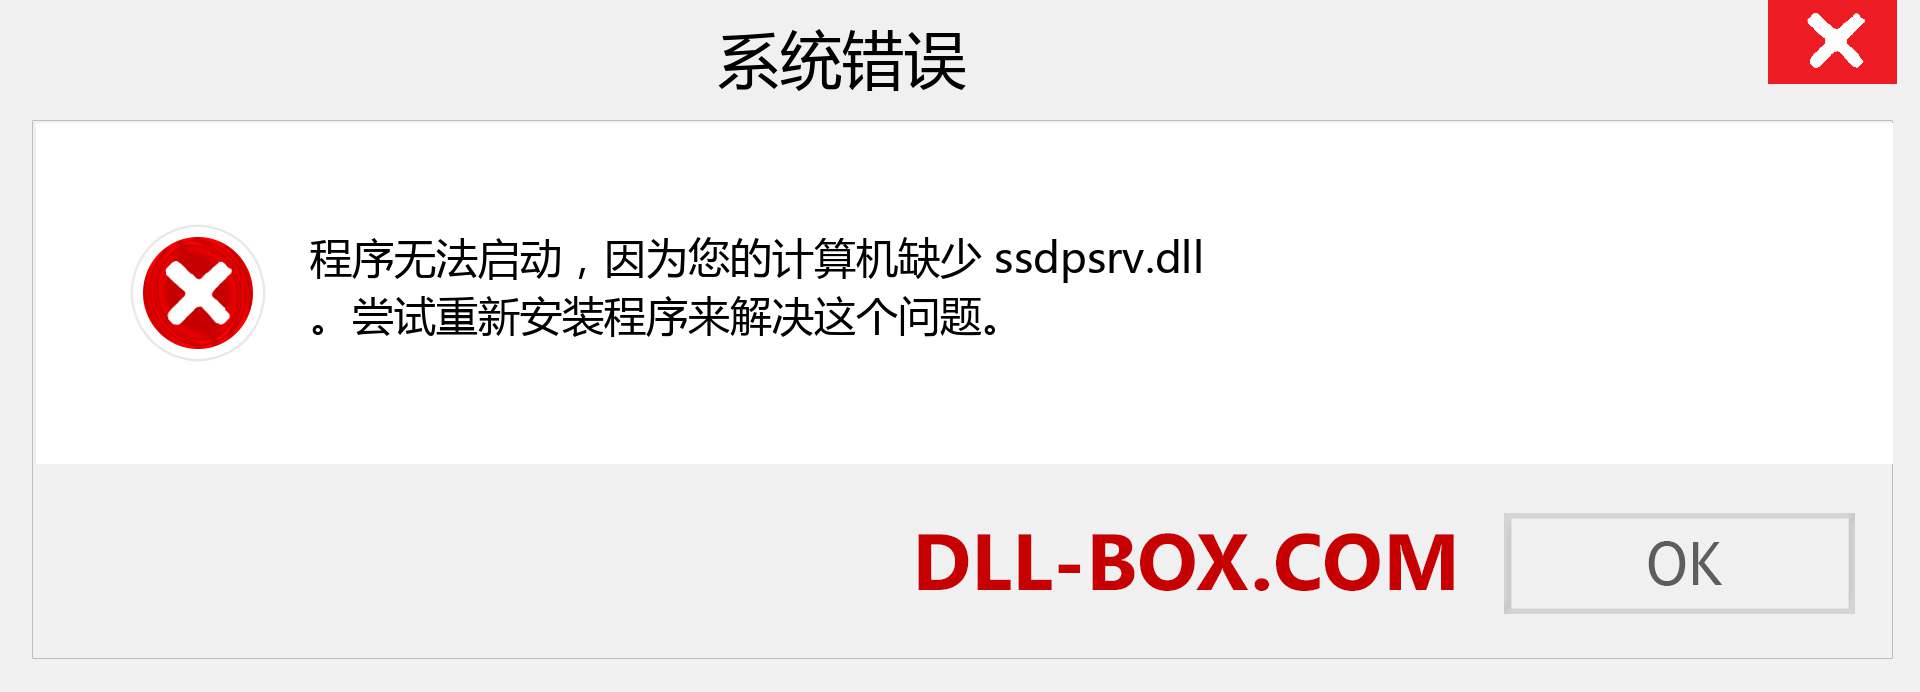 ssdpsrv.dll 文件丢失？。 适用于 Windows 7、8、10 的下载 - 修复 Windows、照片、图像上的 ssdpsrv dll 丢失错误